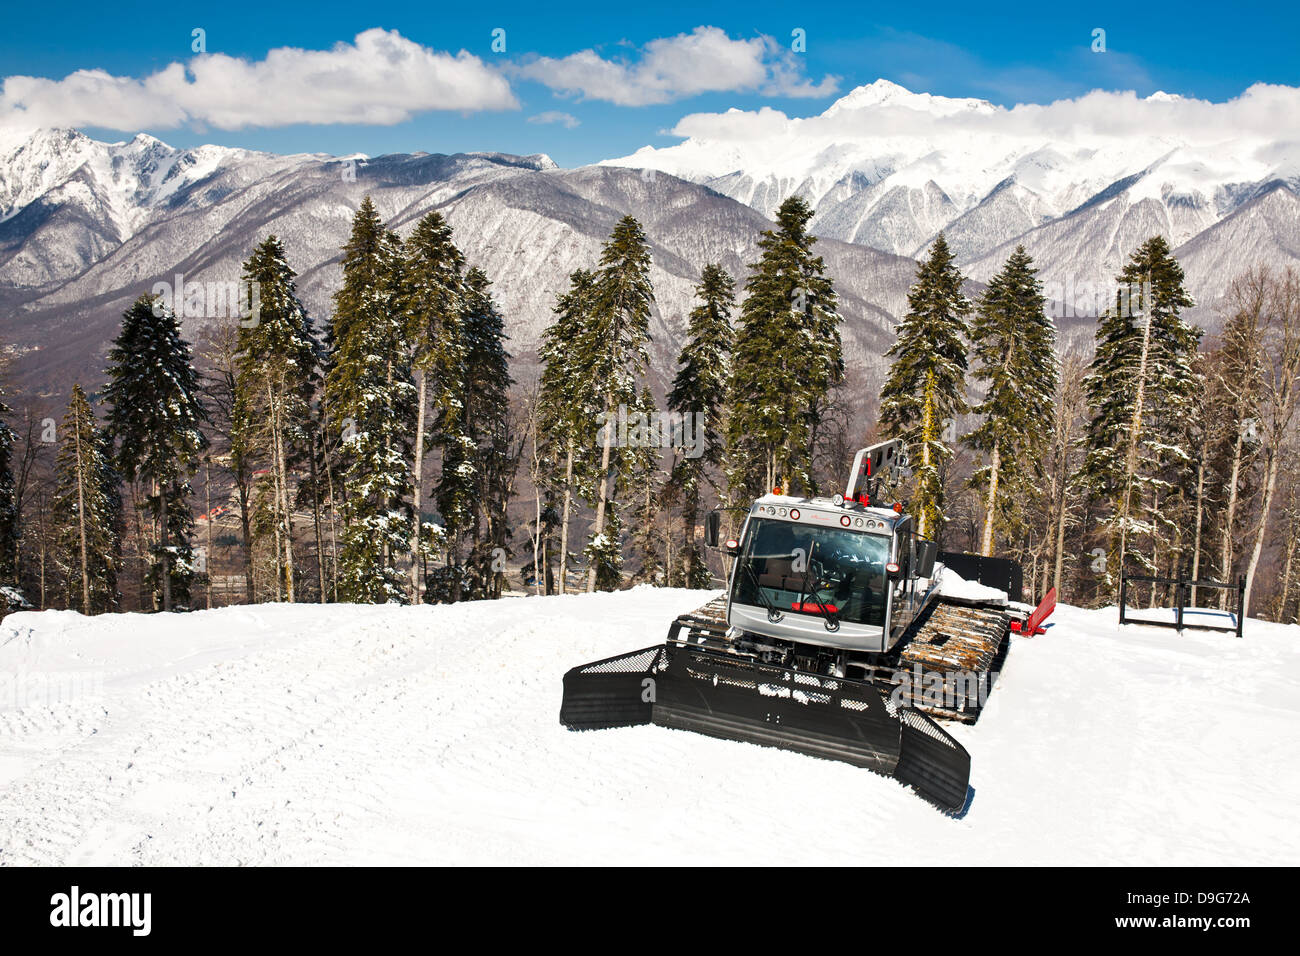 Snowplows, mountains on background Stock Photo